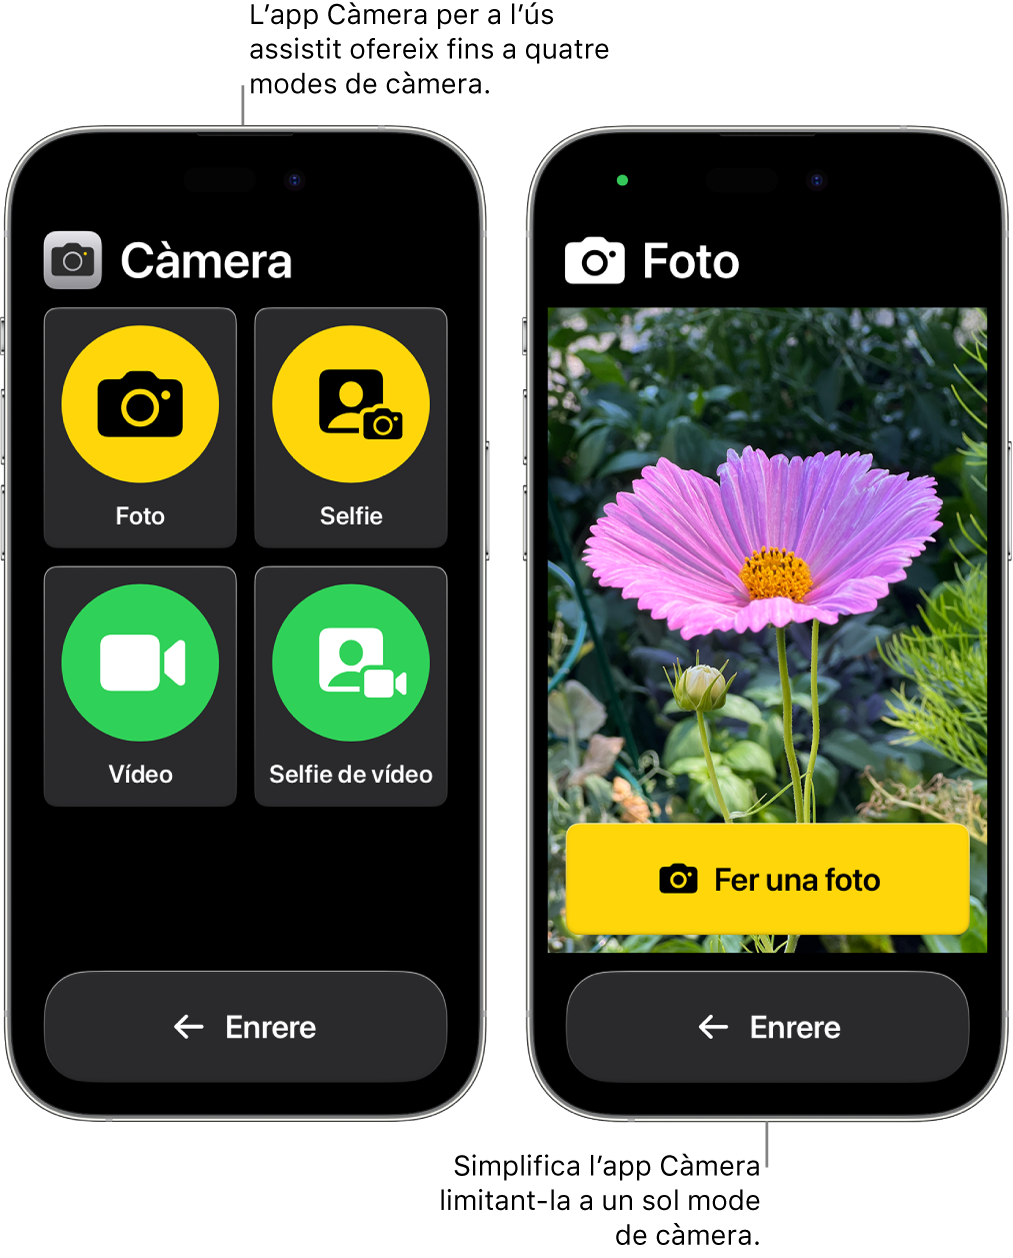 Dos iPhone amb ús assistit. En un iPhone s’hi veu l’app Càmera amb els modes de càmera que pot triar l’usuari, com “Vídeo” o “Selfie”. A l’altre iPhone s’hi veu l’app Càmera amb un sol mode per fer fotos.